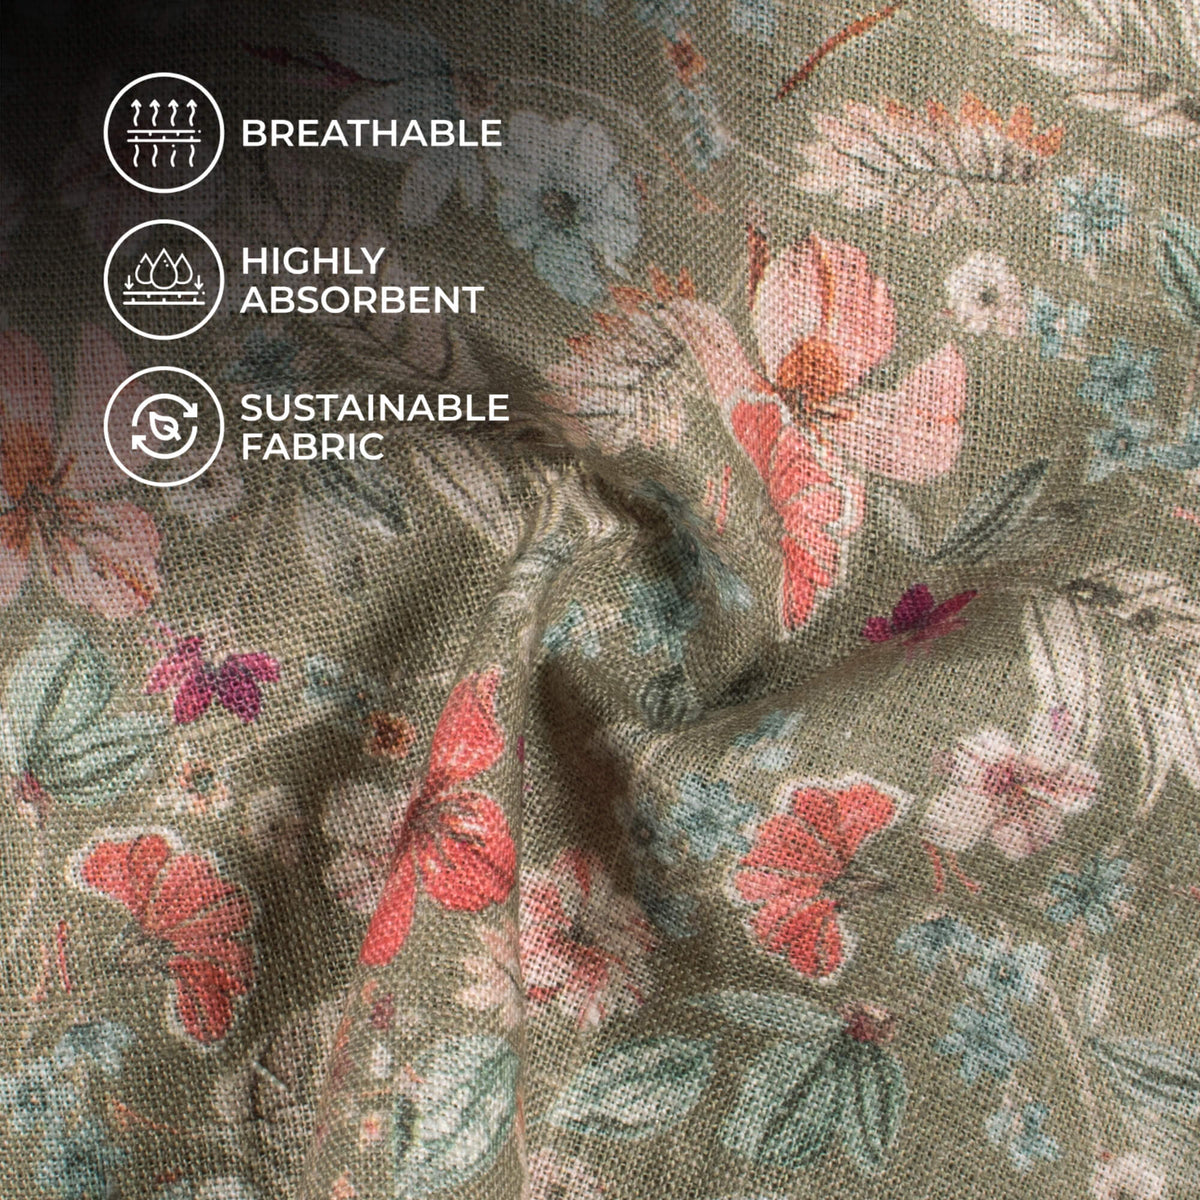 Linenbuy Summer Floral Linen Fabric Digitally Printed Medium